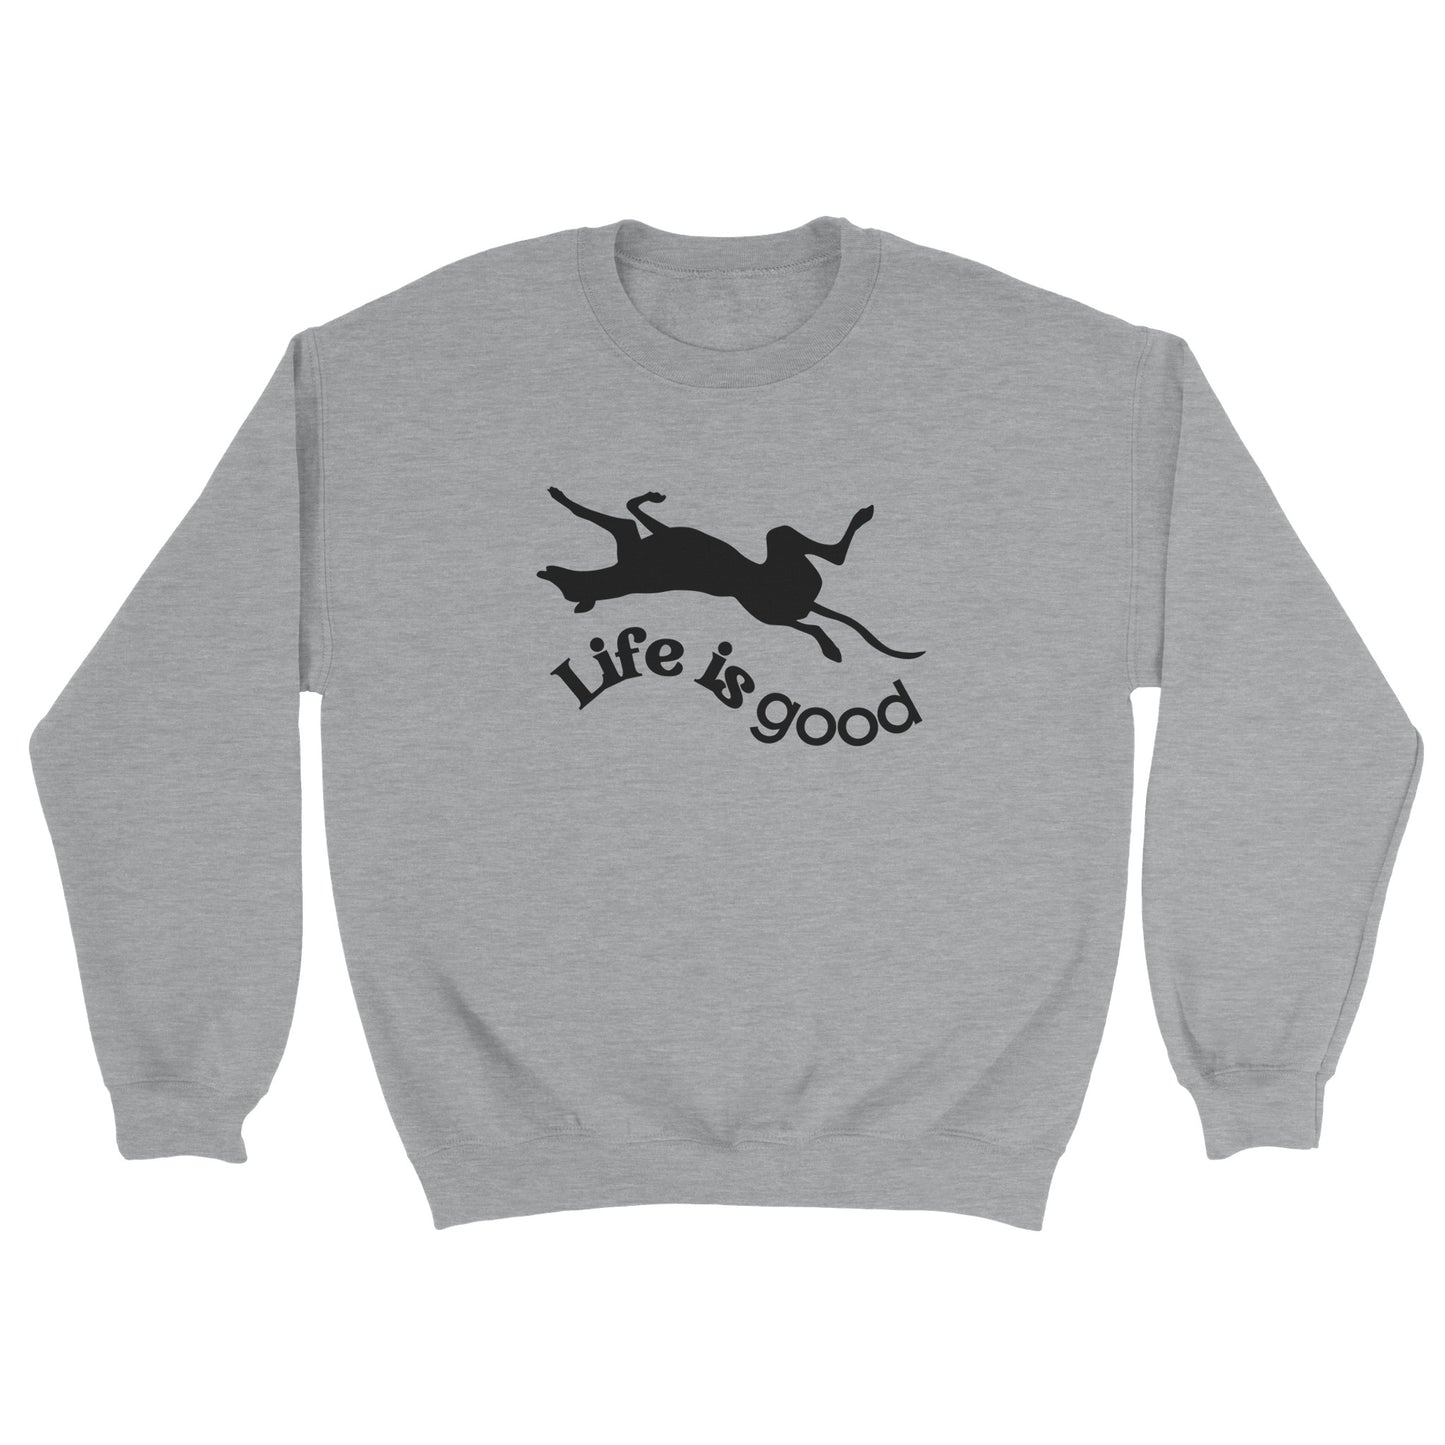 Life is Good Crewneck Sweatshirt